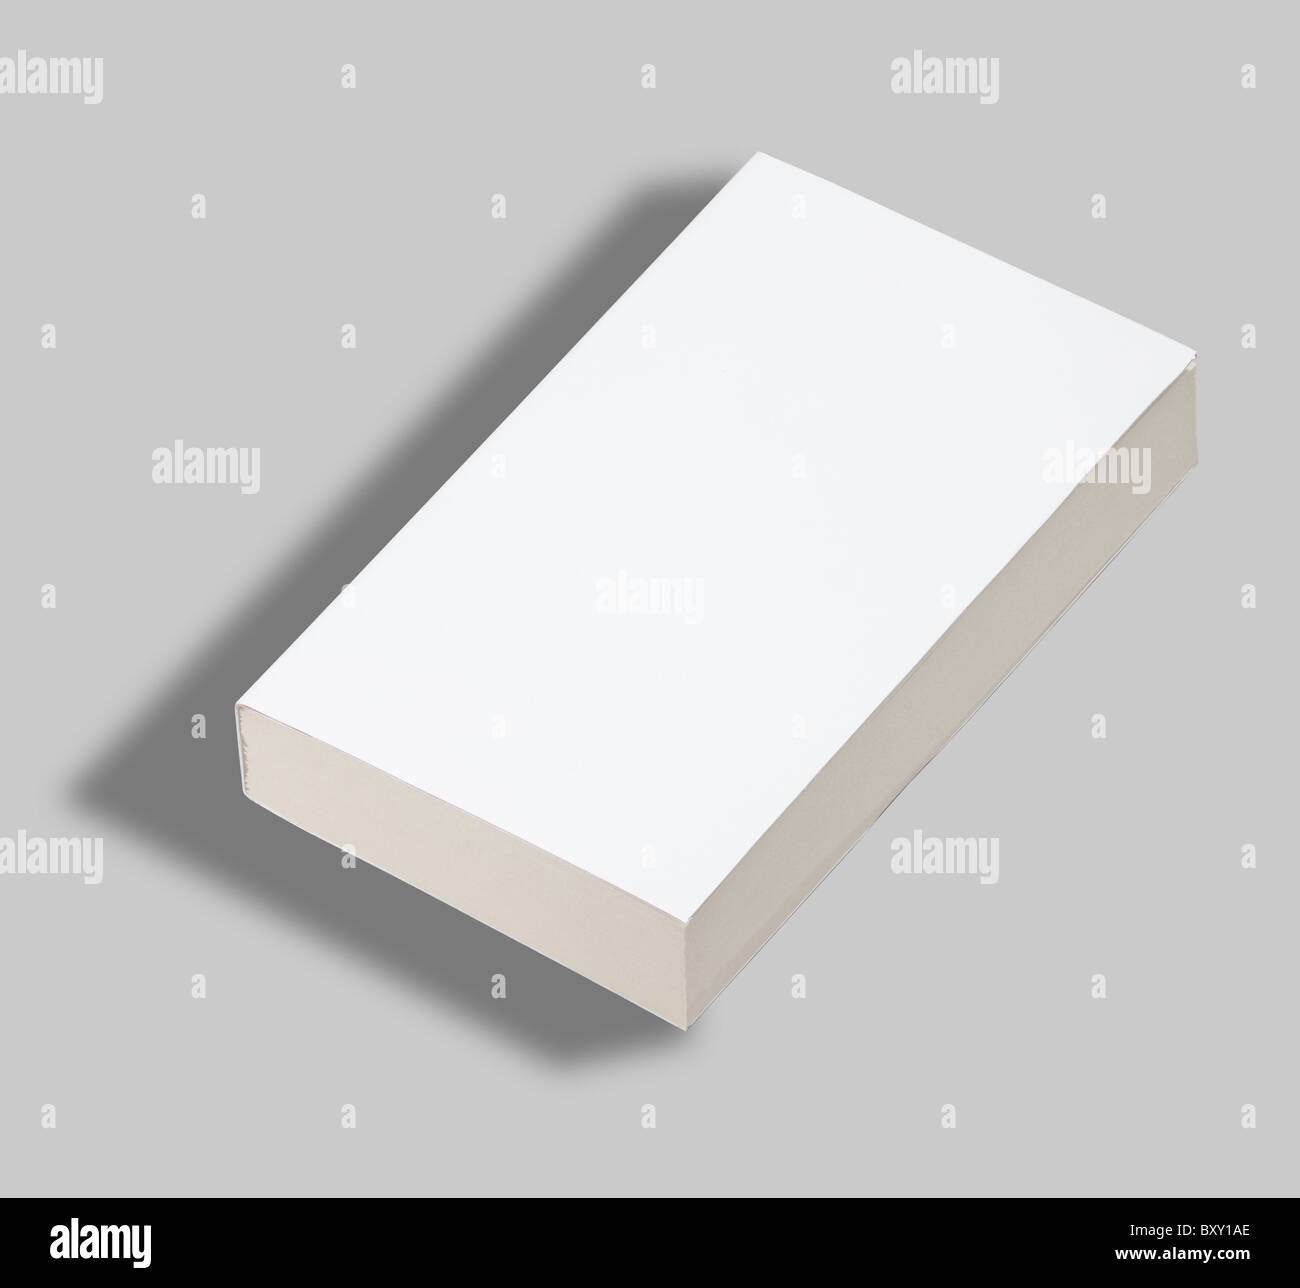 Blank libro in brossura coperchio bianco w tracciato di ritaglio Foto Stock